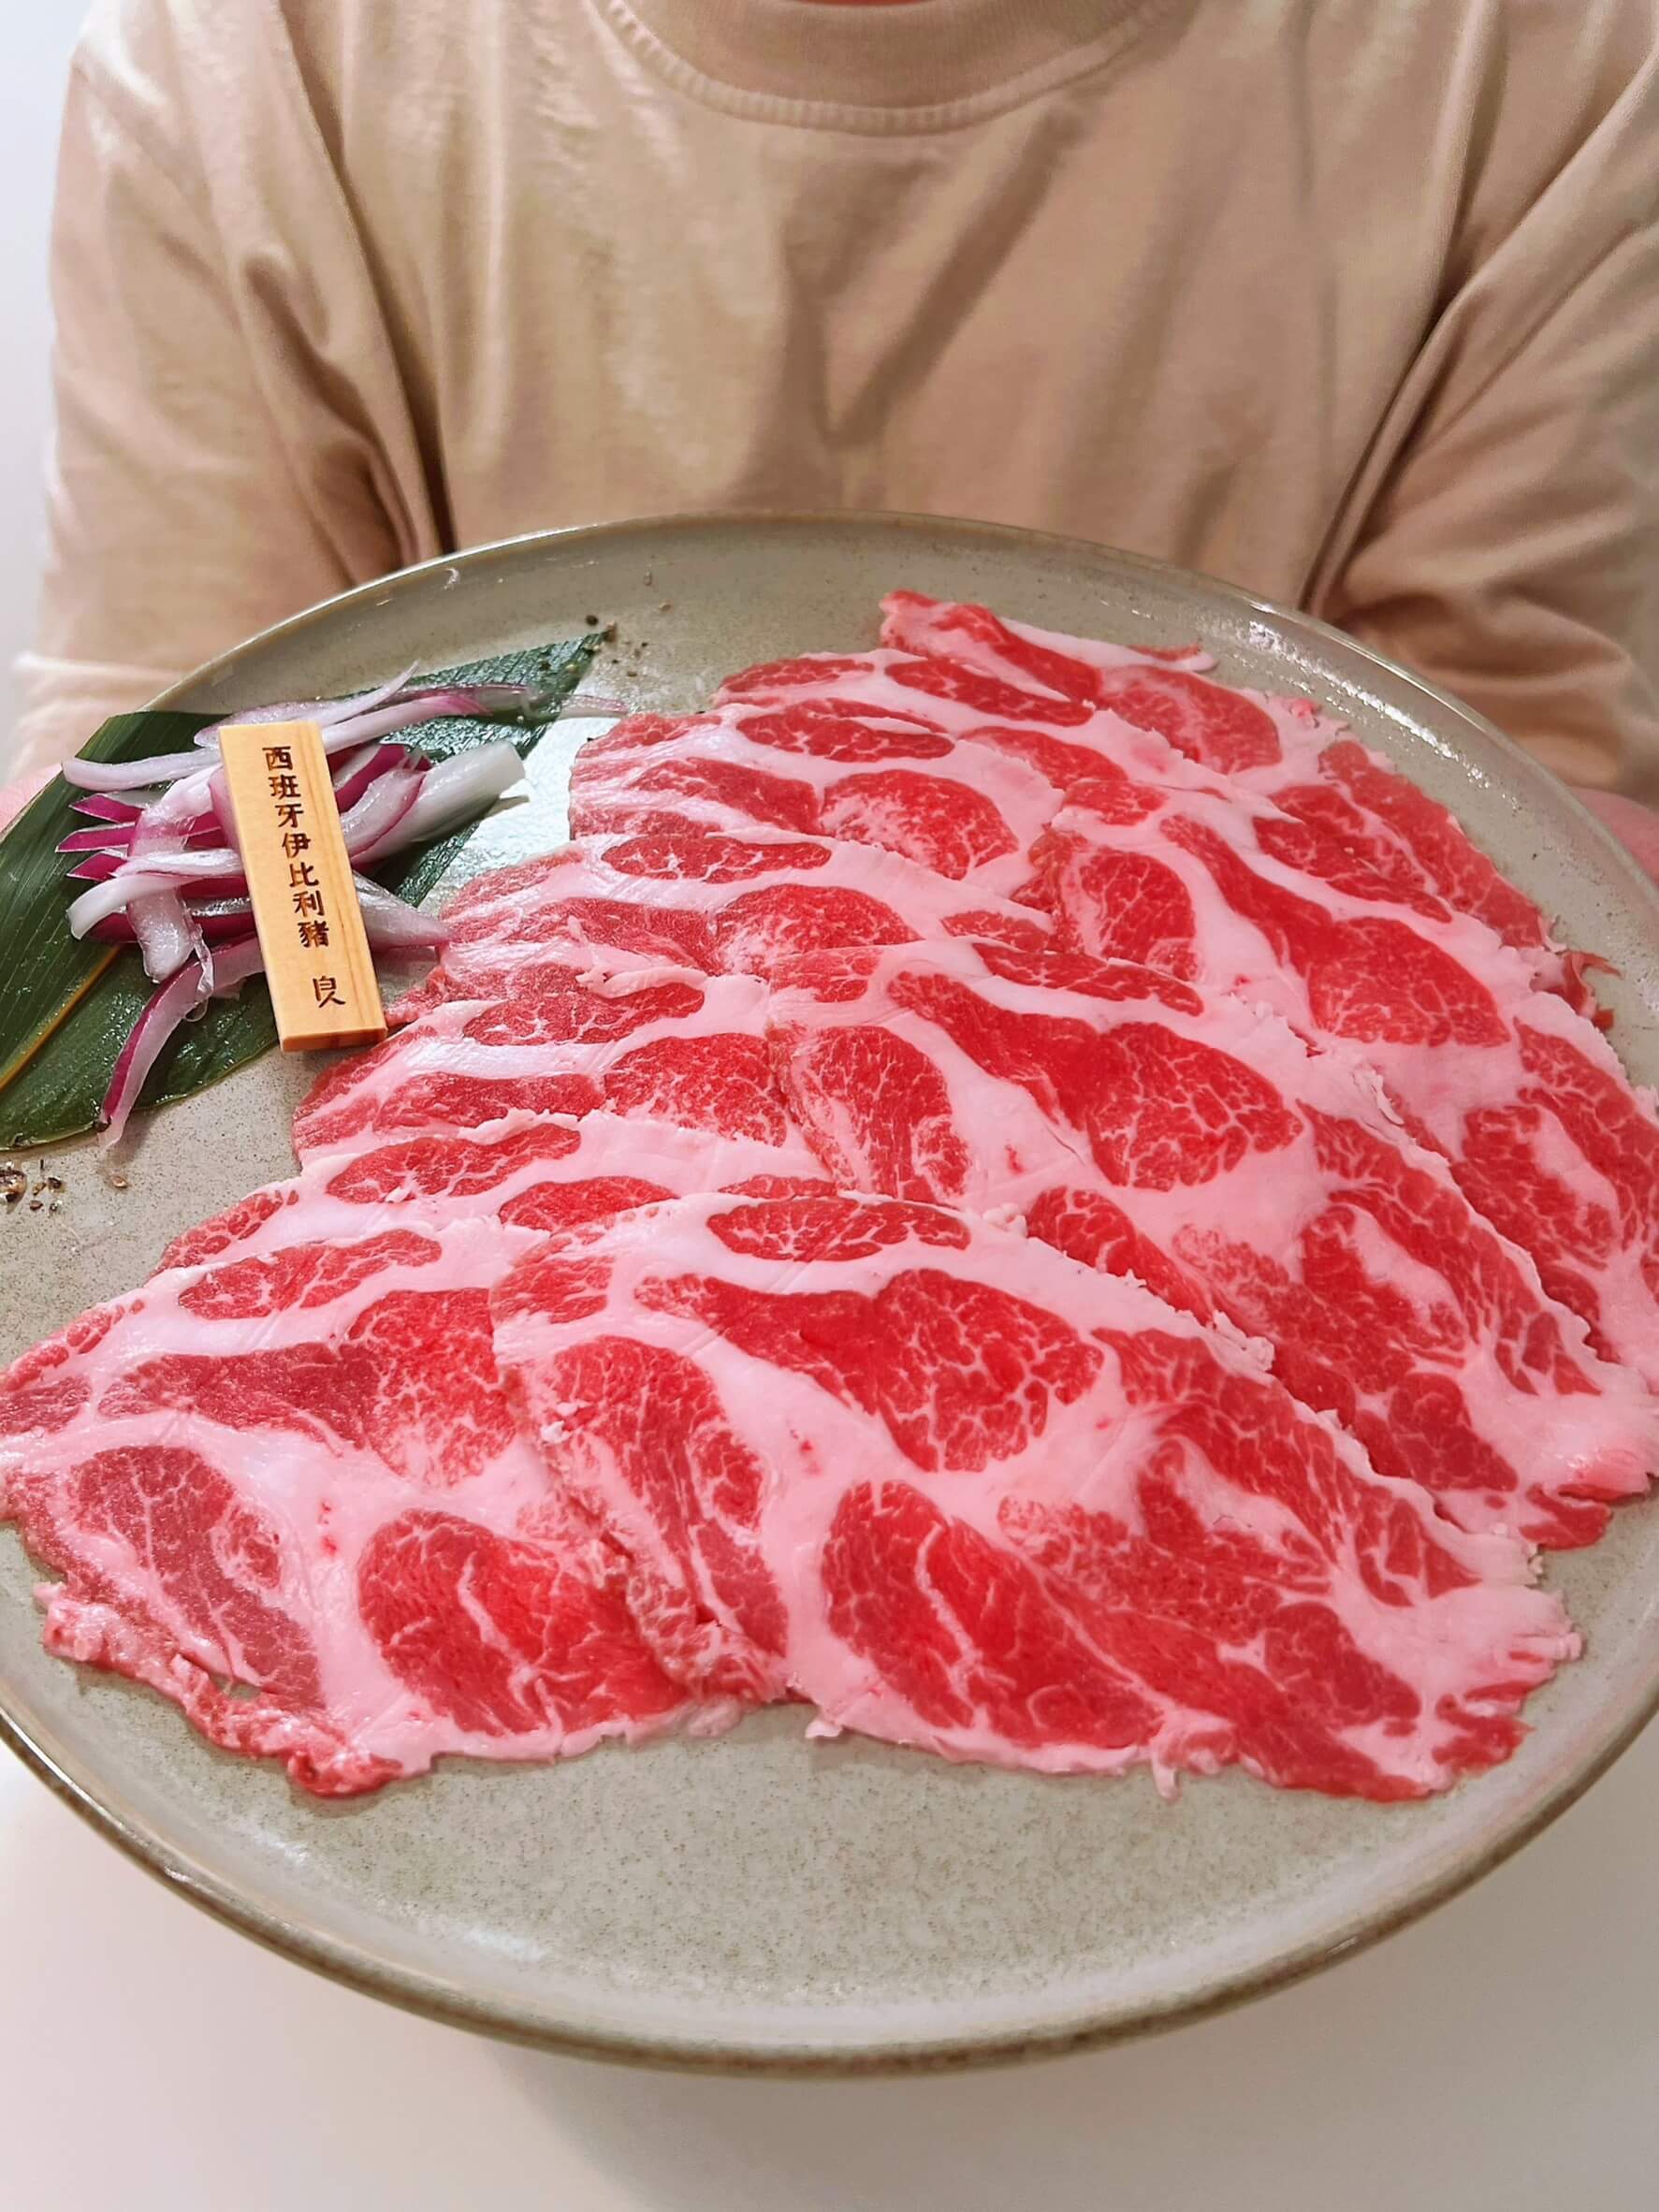 台南安平新開幕【良人煮鍋】選用天然食材和頂級肉品